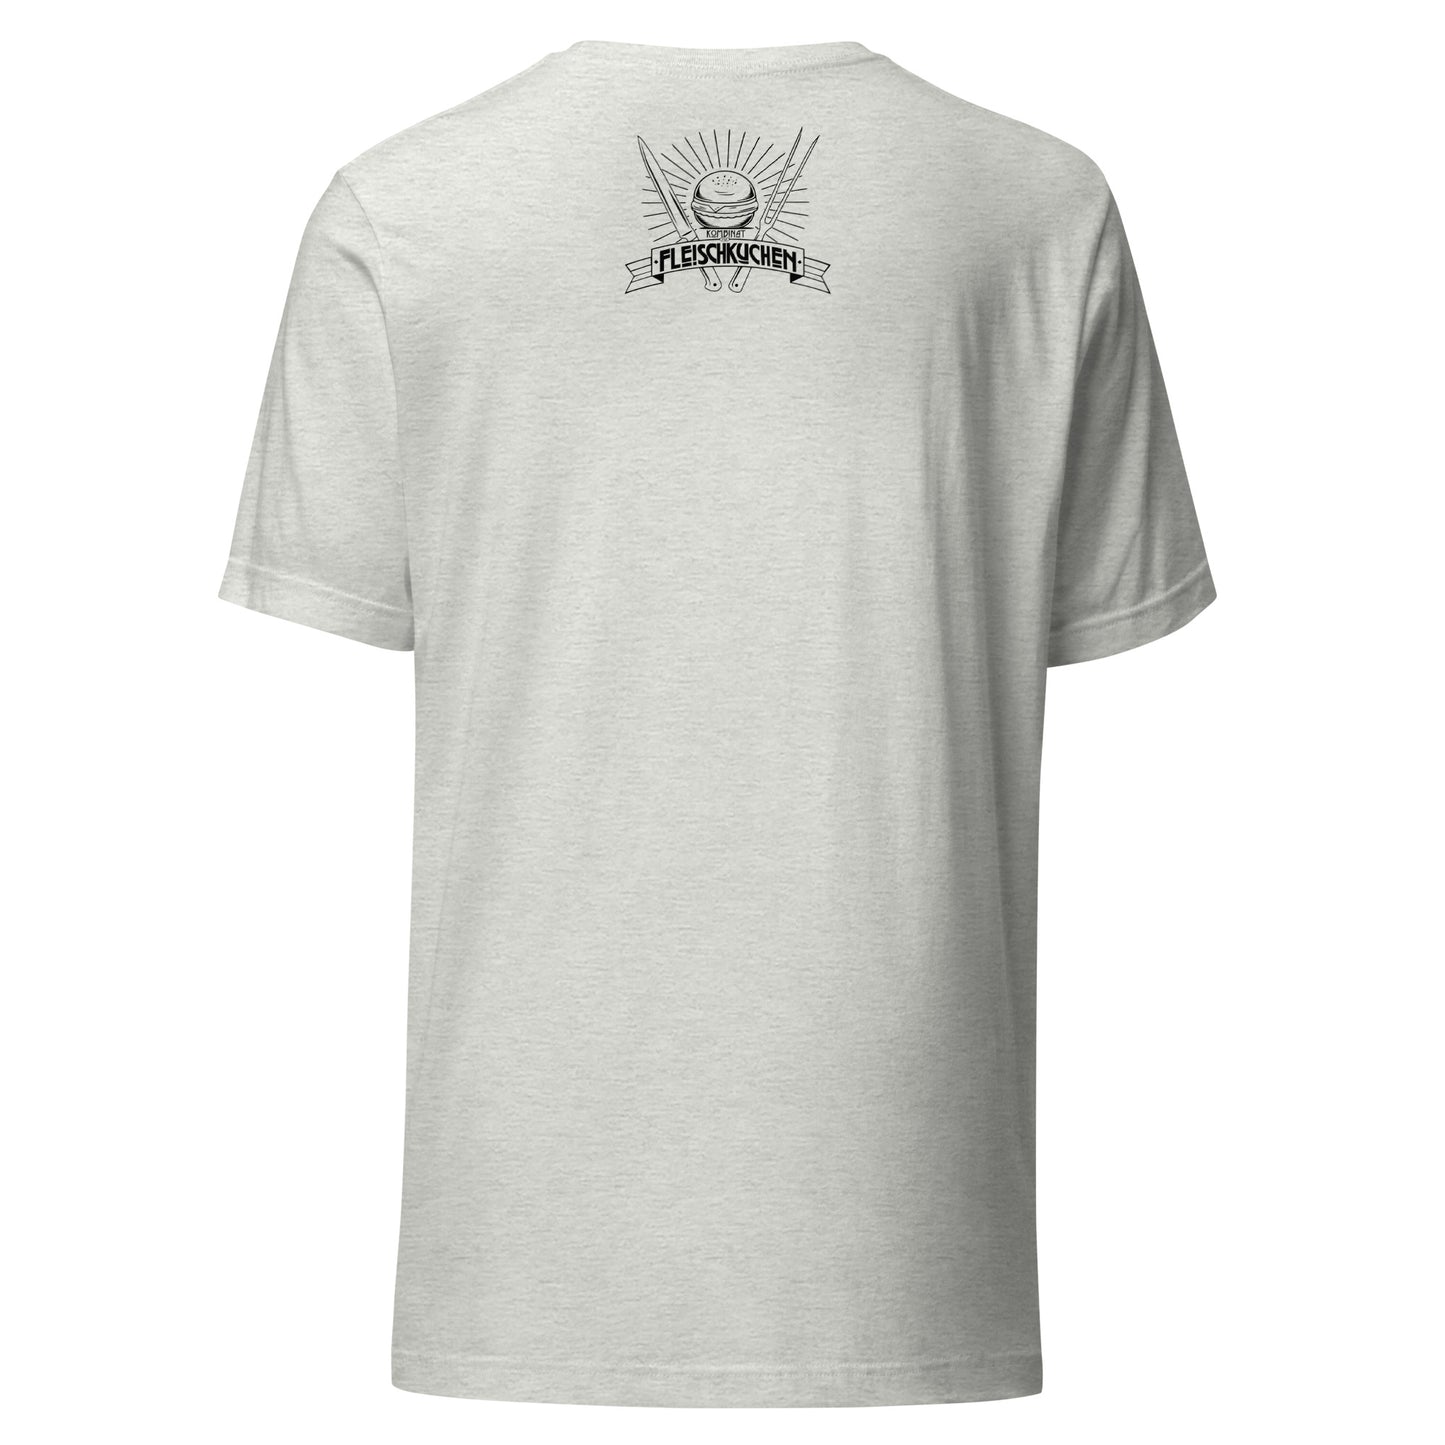 Unisex-T-Shirt - Fleischwolf